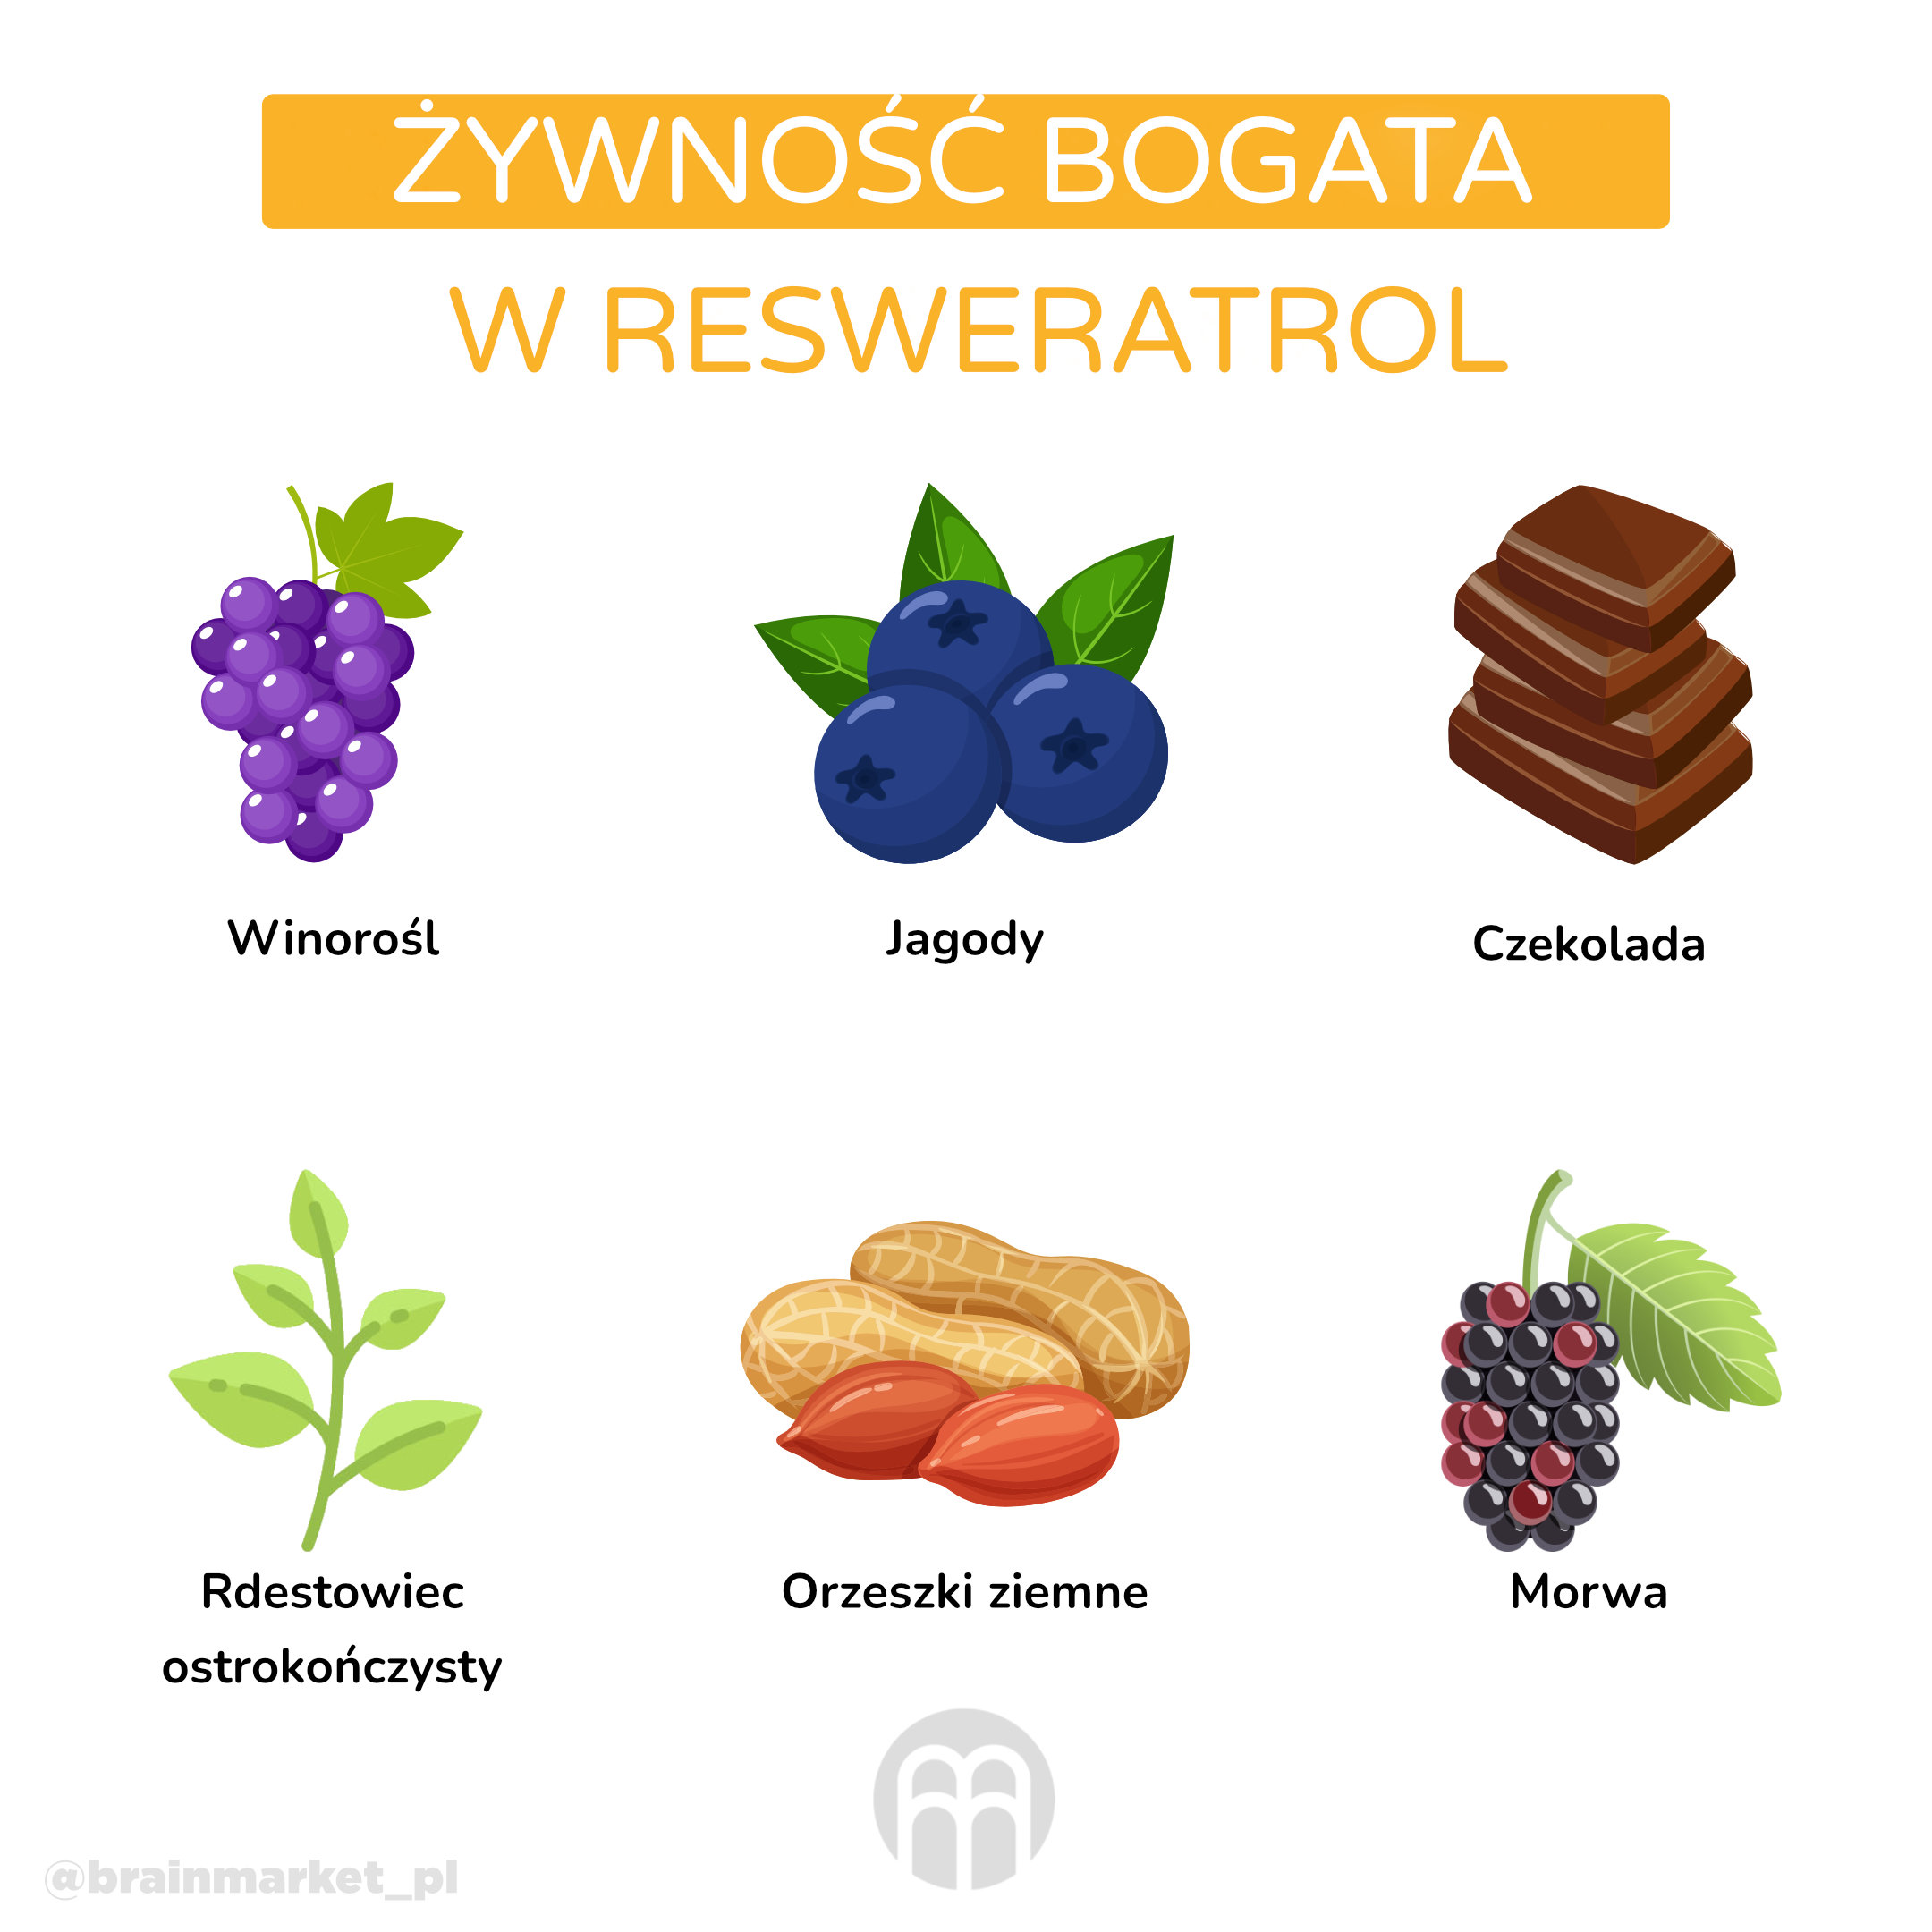 potraviny bohate na resveratrol_infografika_pl